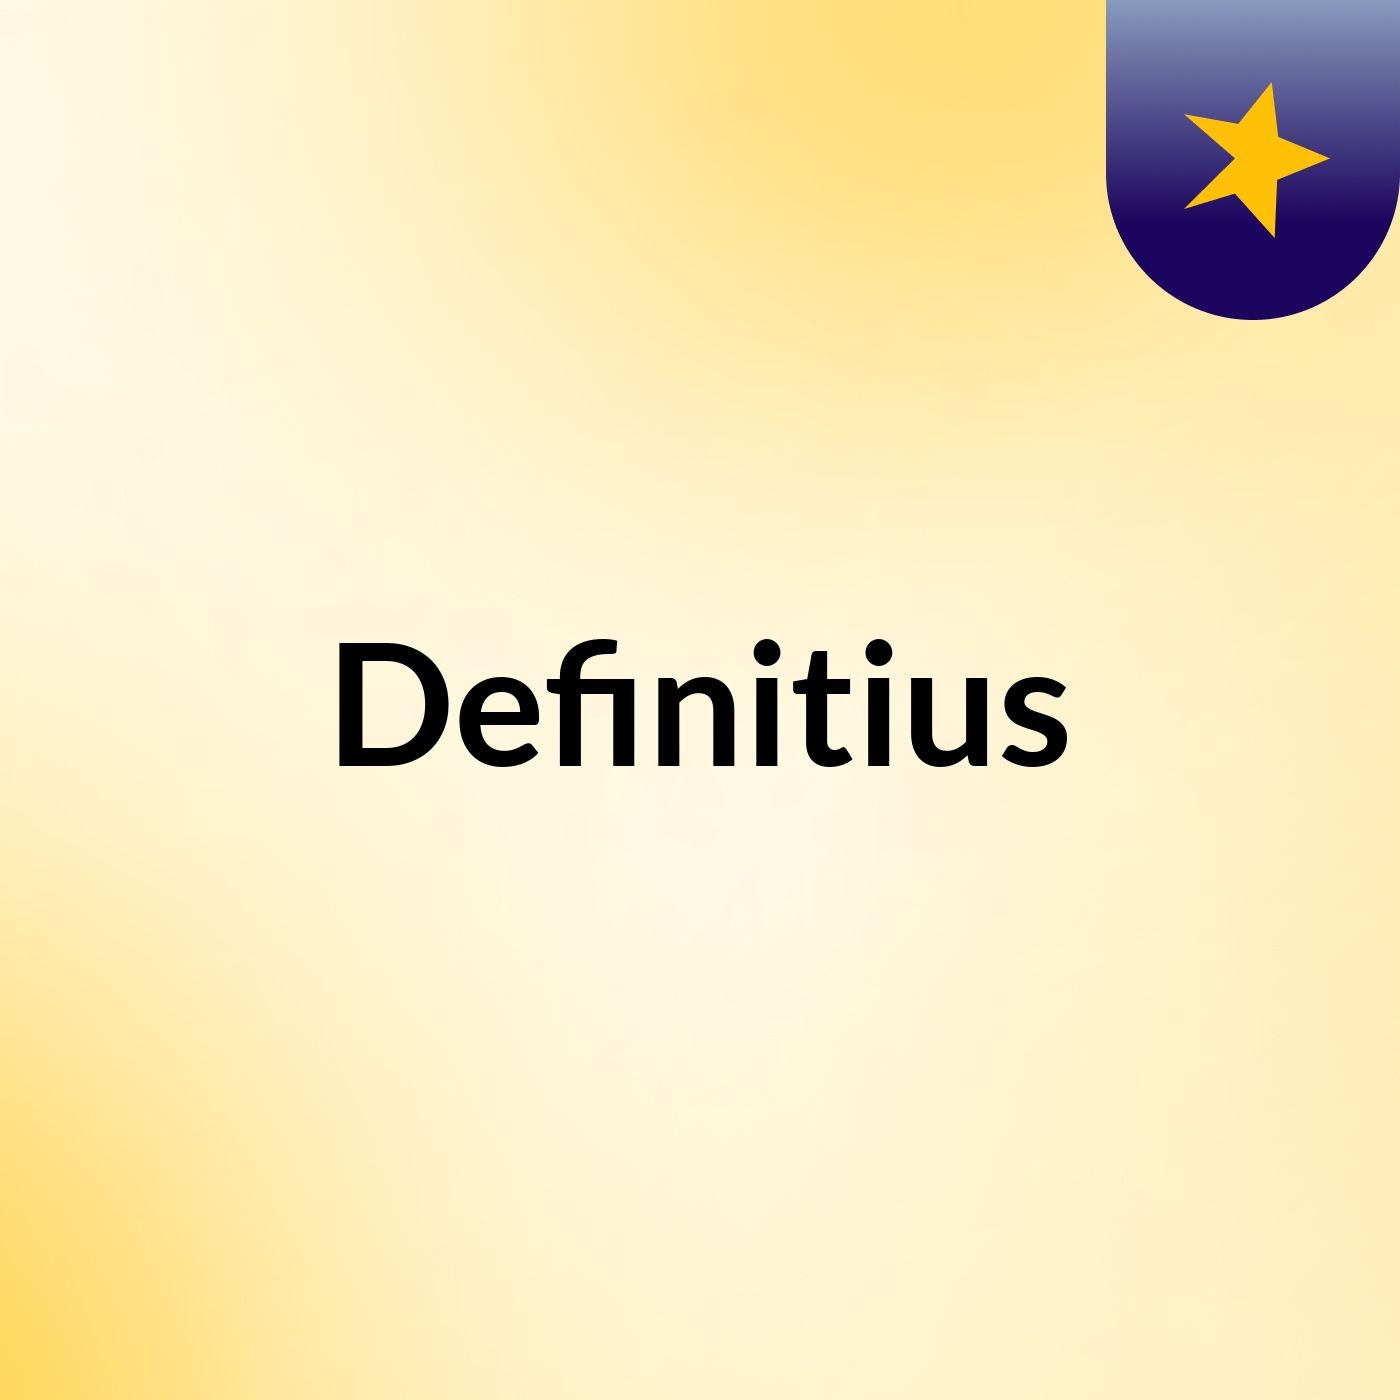 Definitius